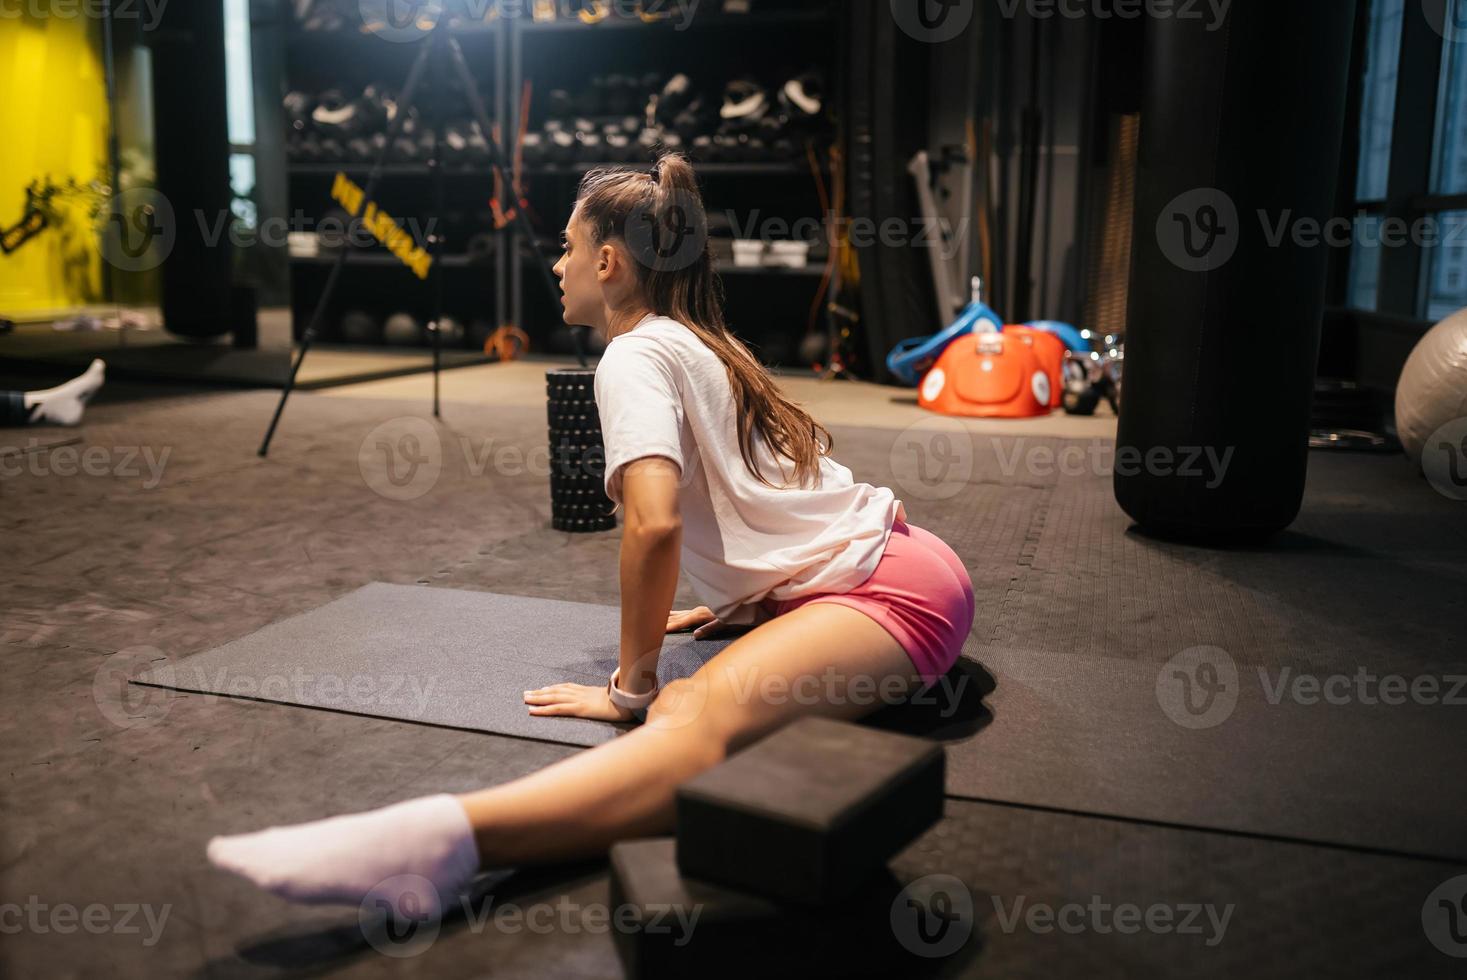 jong vrouw werken uit, aan het doen yoga of pilates oefening foto